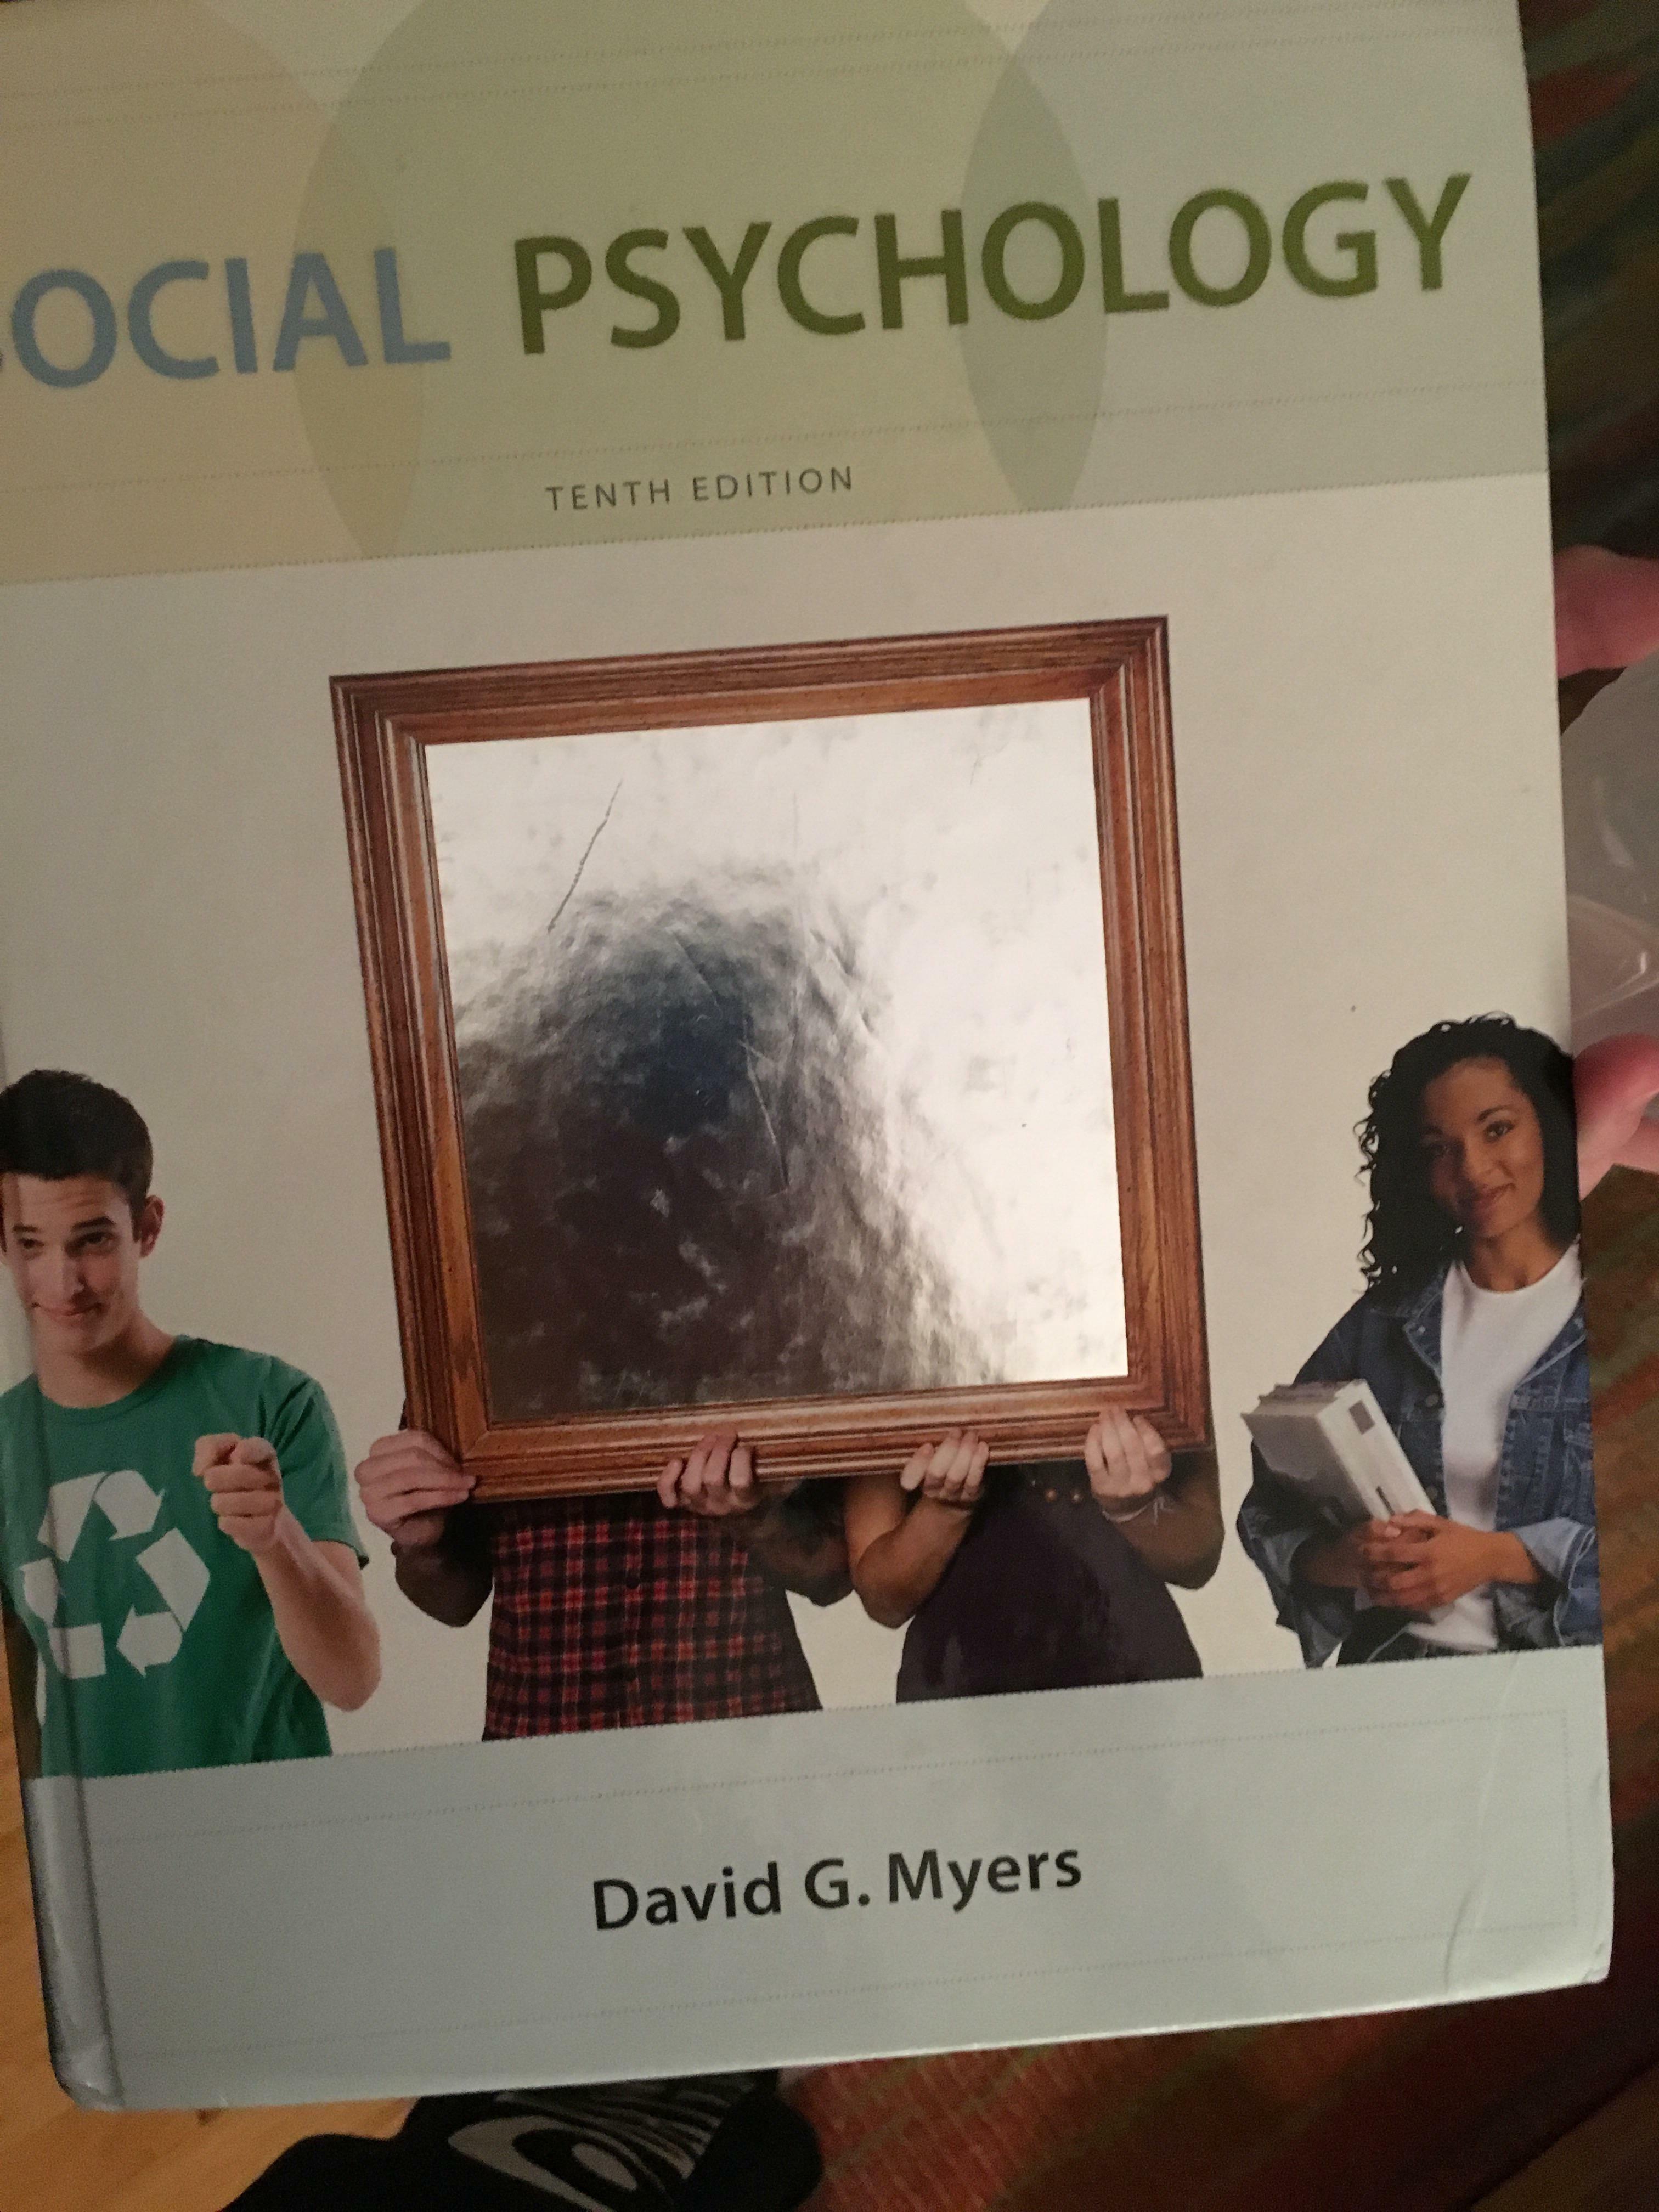 ce manuel de psychologie sociale qui était censé montrer le reflet de ta personnalité.